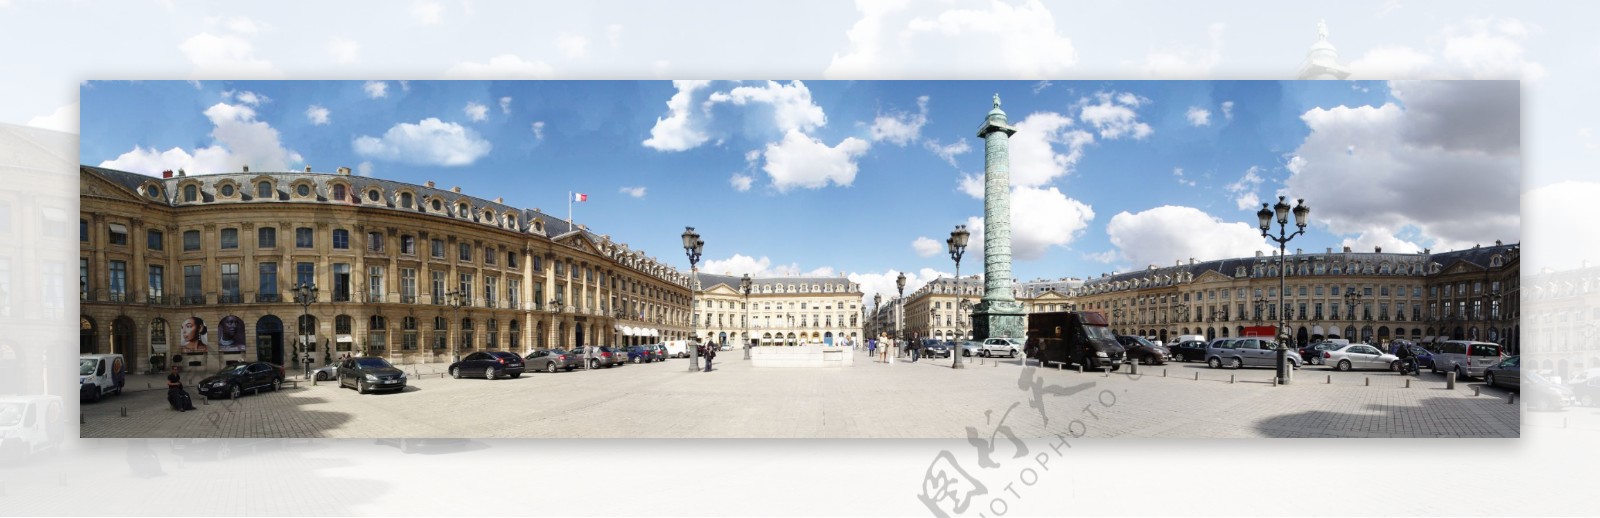 法国巴黎旺多姆广场广角全景图片